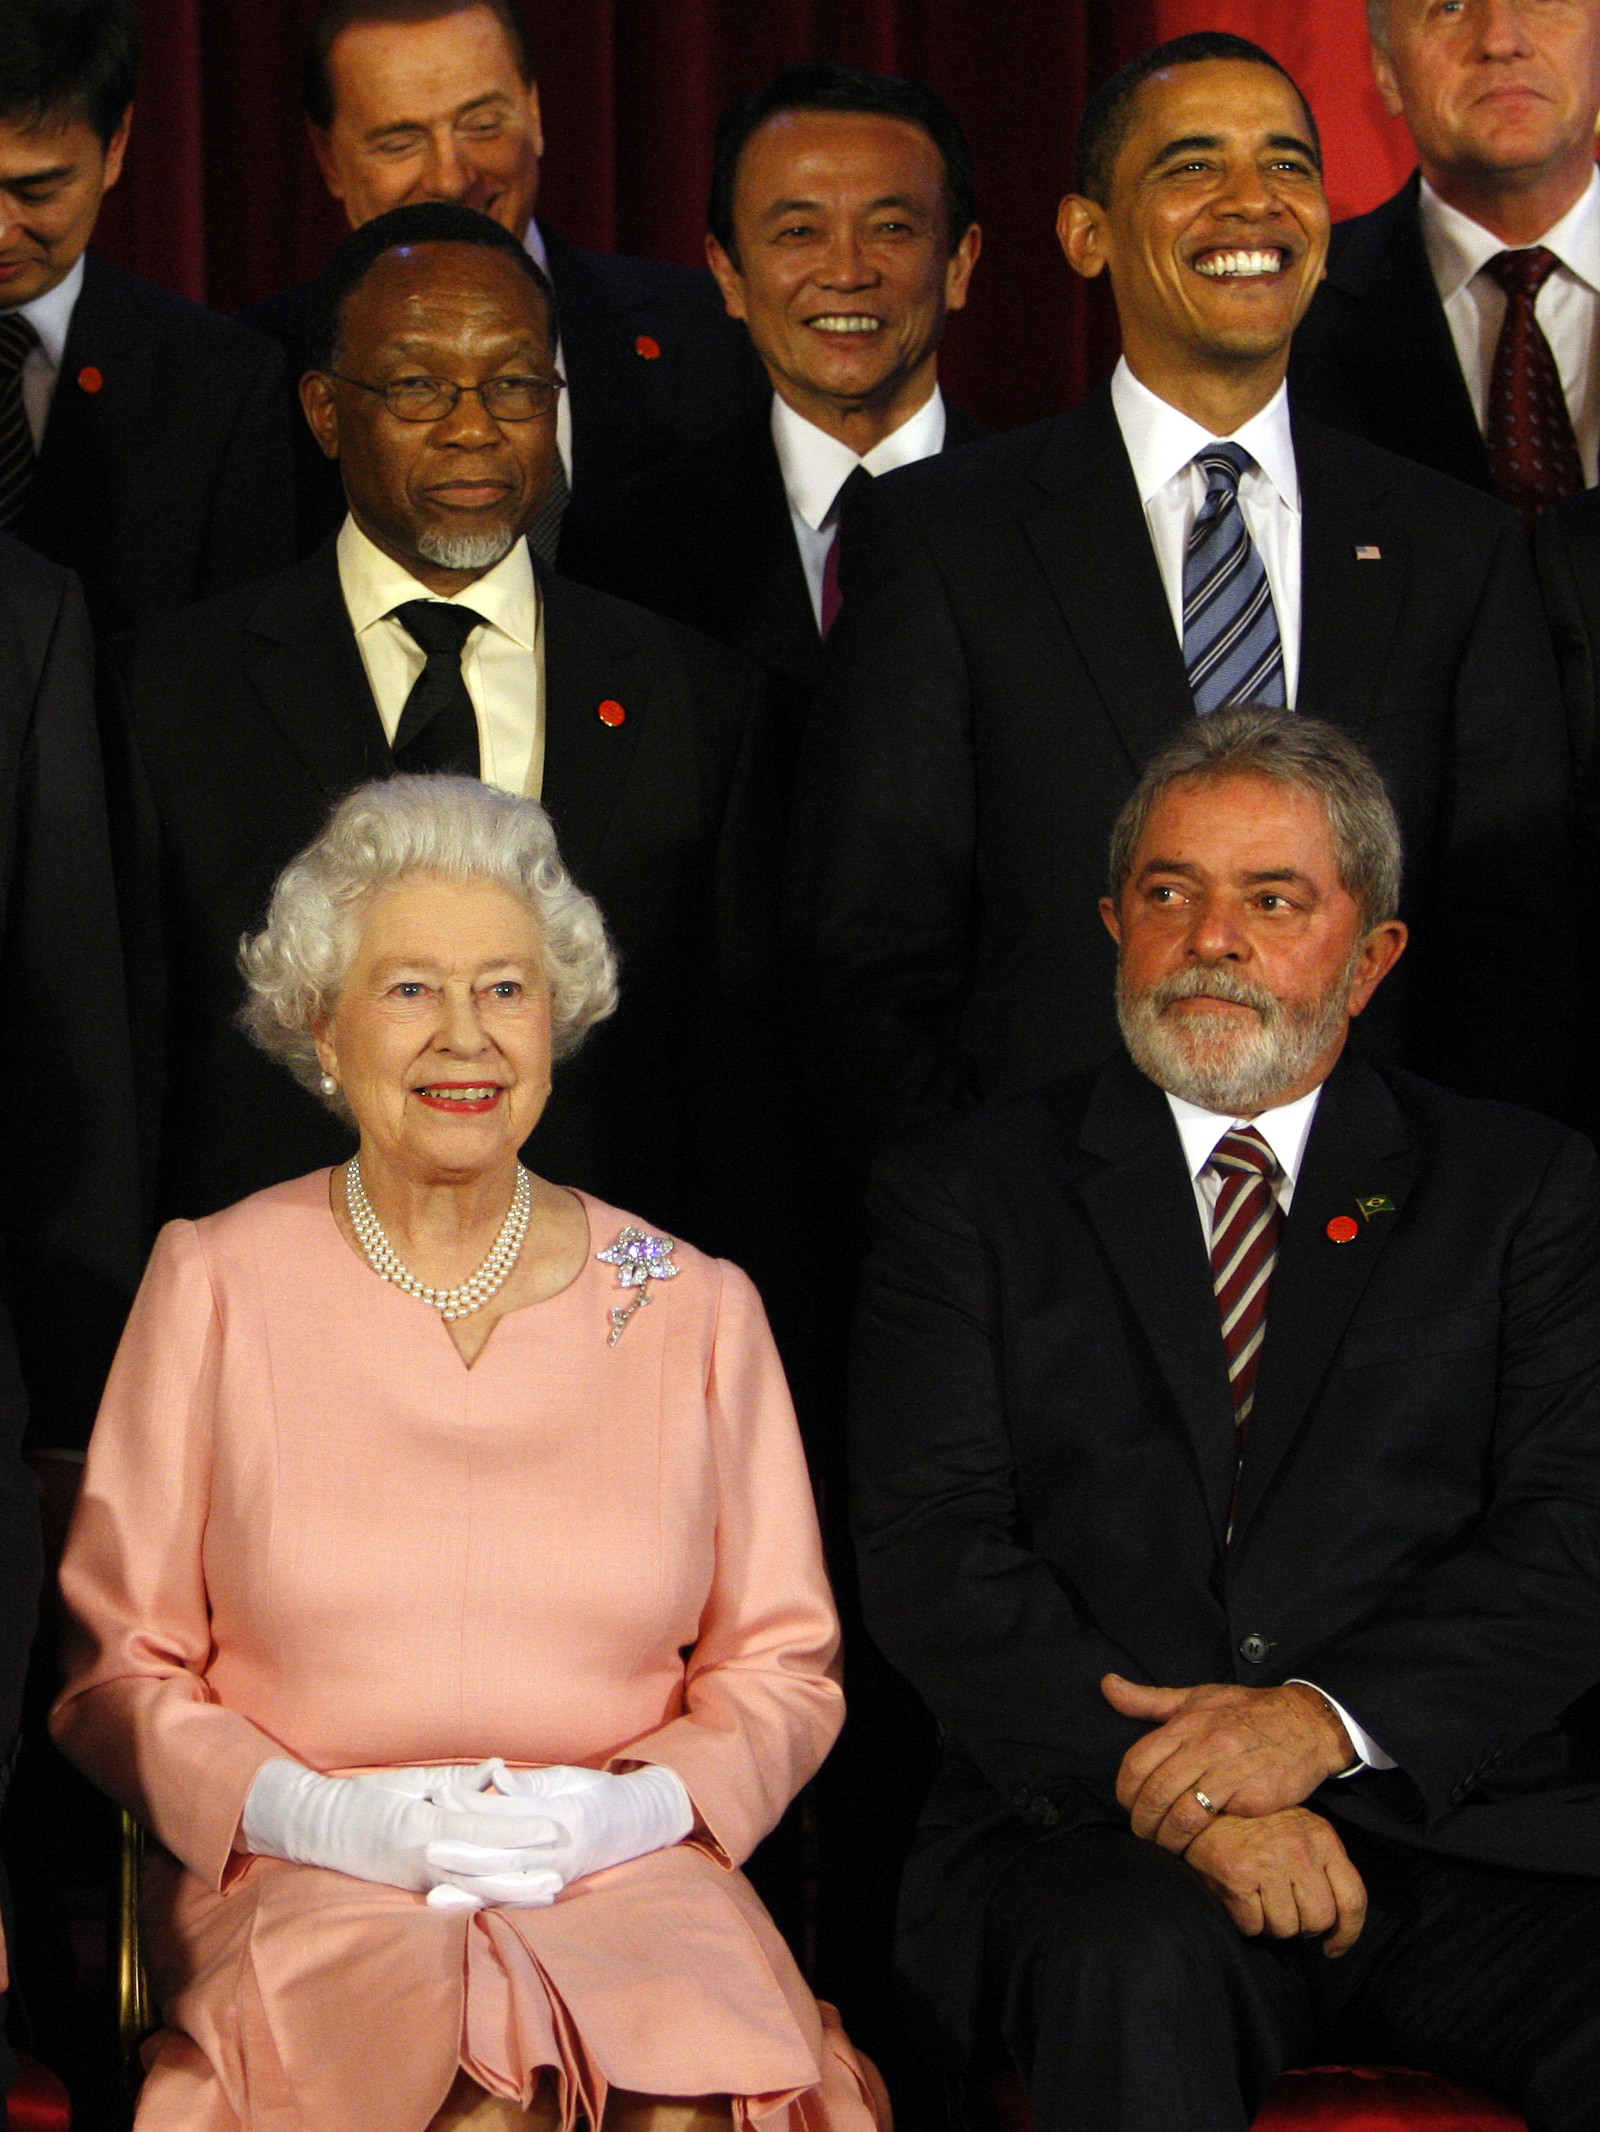 Rainha Elizabeth II senta-se ao lado de Lula, então presidente do Brasil, durante encontro os líderes do G20 para a fotografia oficial do evento, no Palácio de Buckingham em Londres, em abril de 2009 — Foto: Reprodução/Arquivo